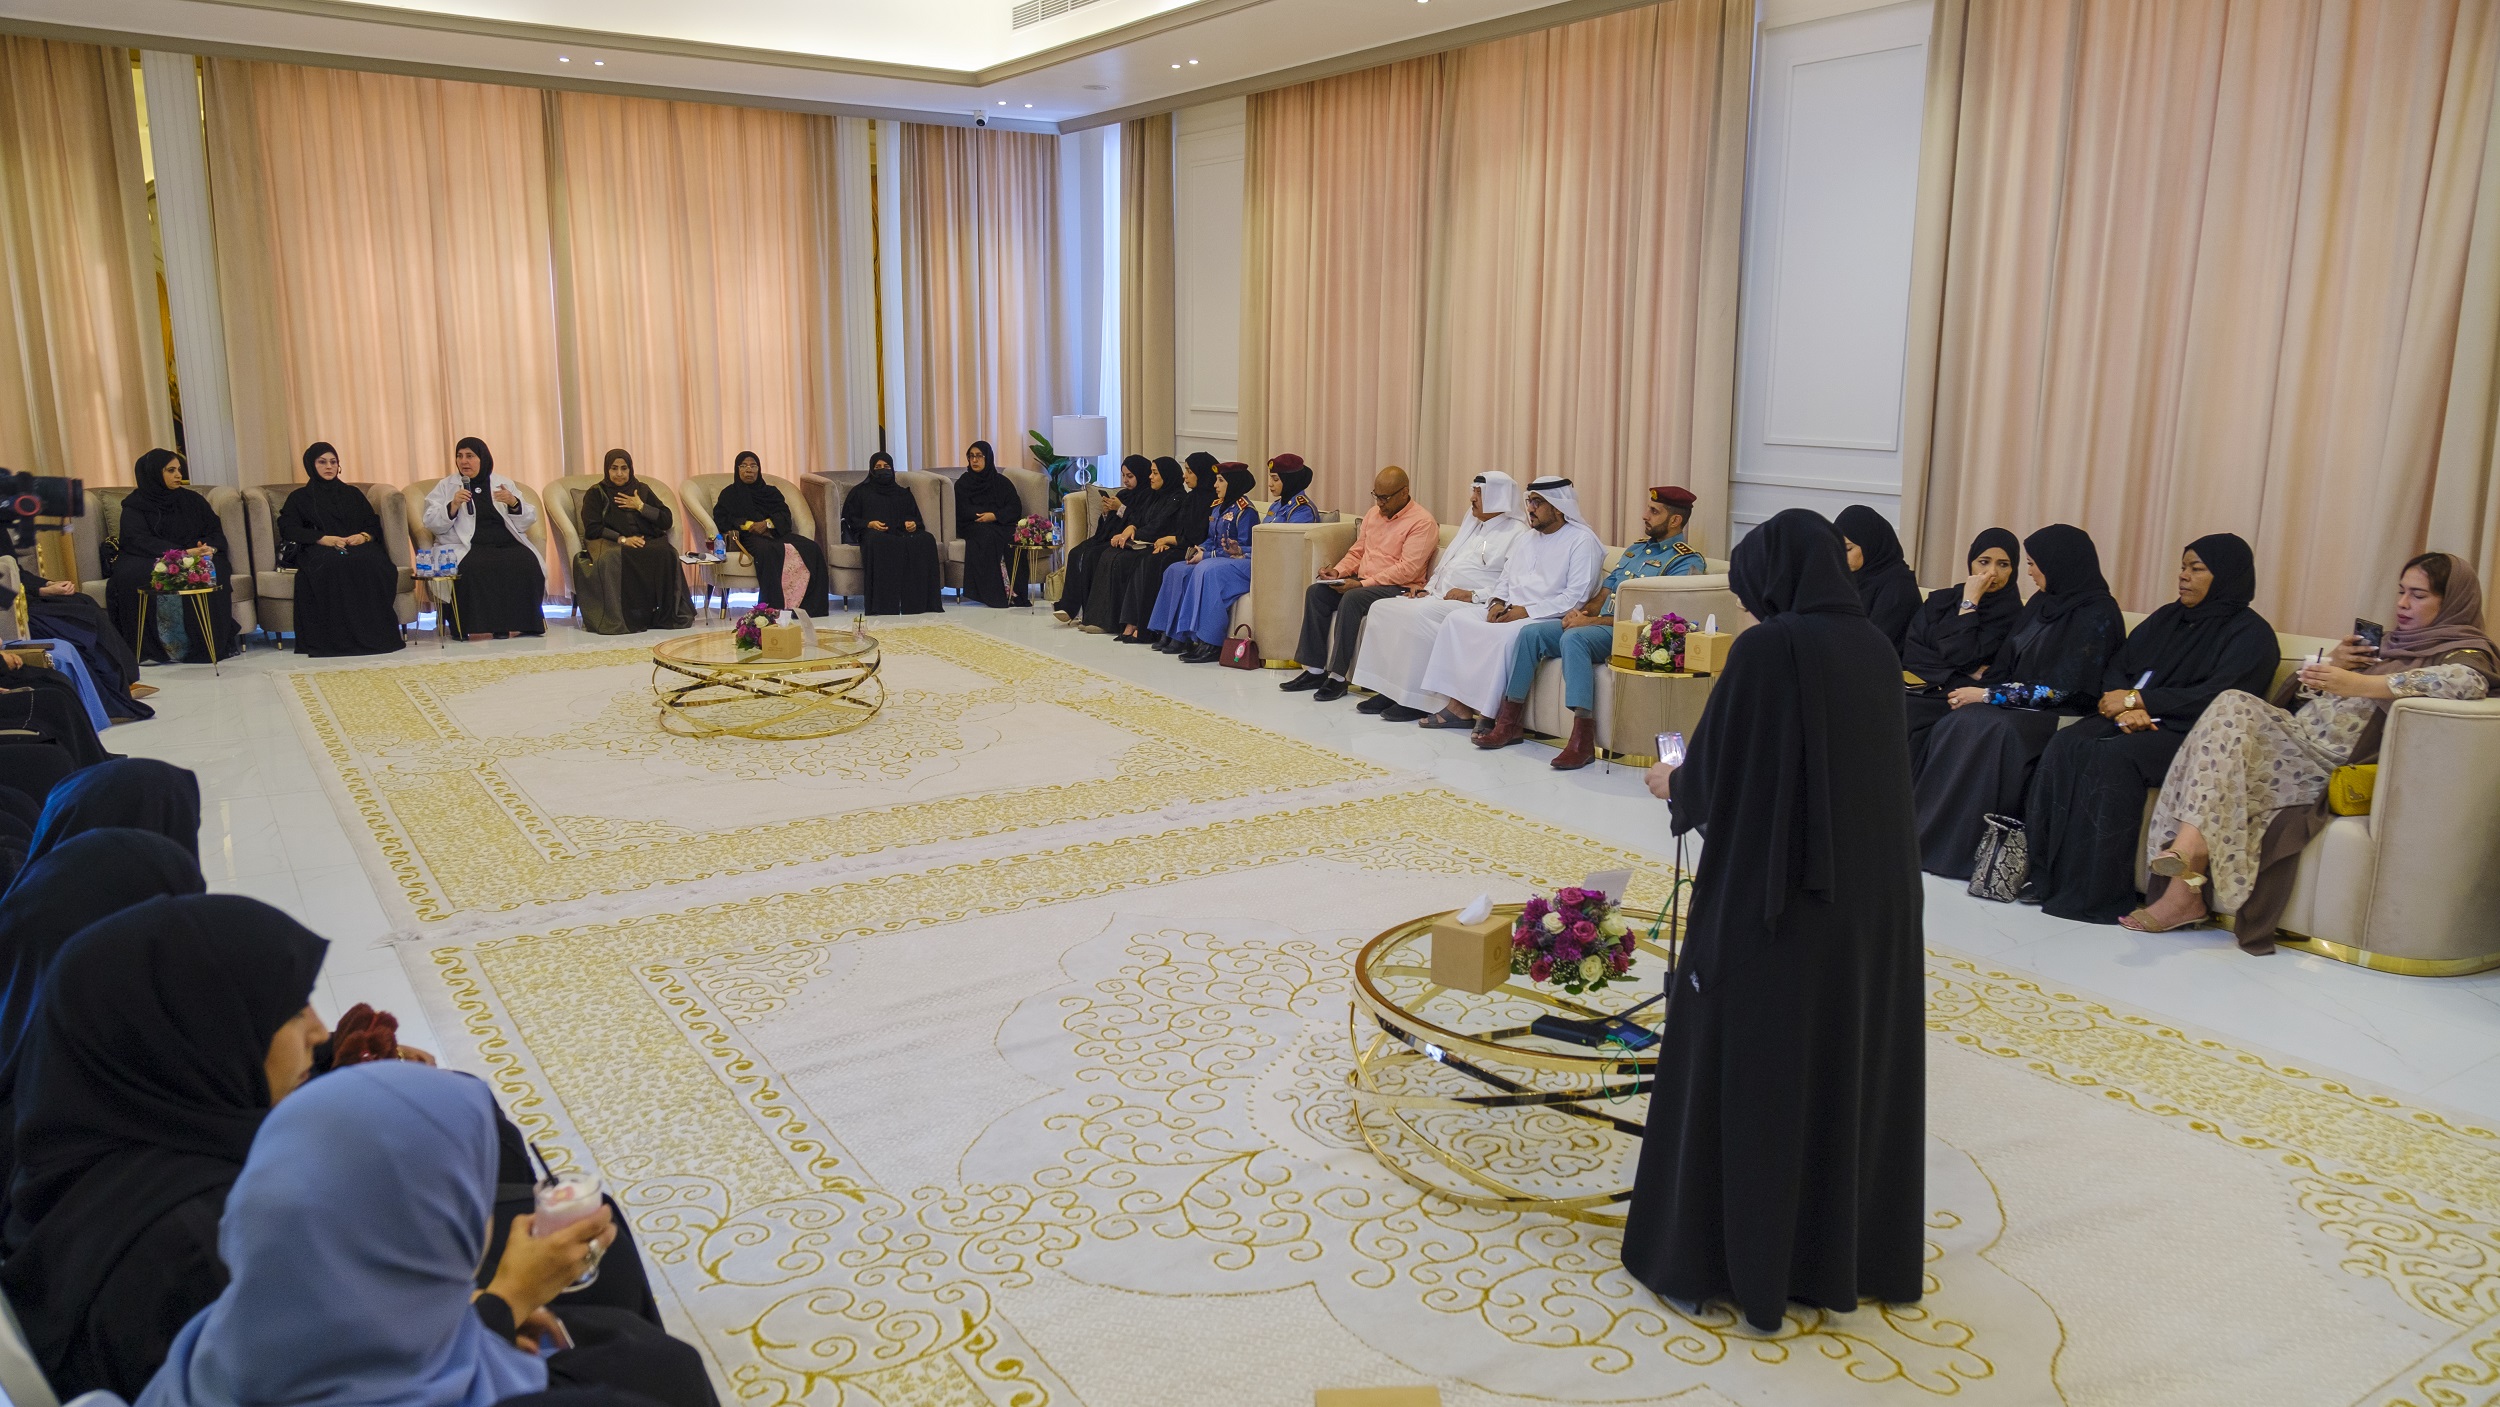 مجلس سيدات اعمال عجمان ينظم جلسة حوارية بعنوان "الدور الاقتصادي للأسرة"